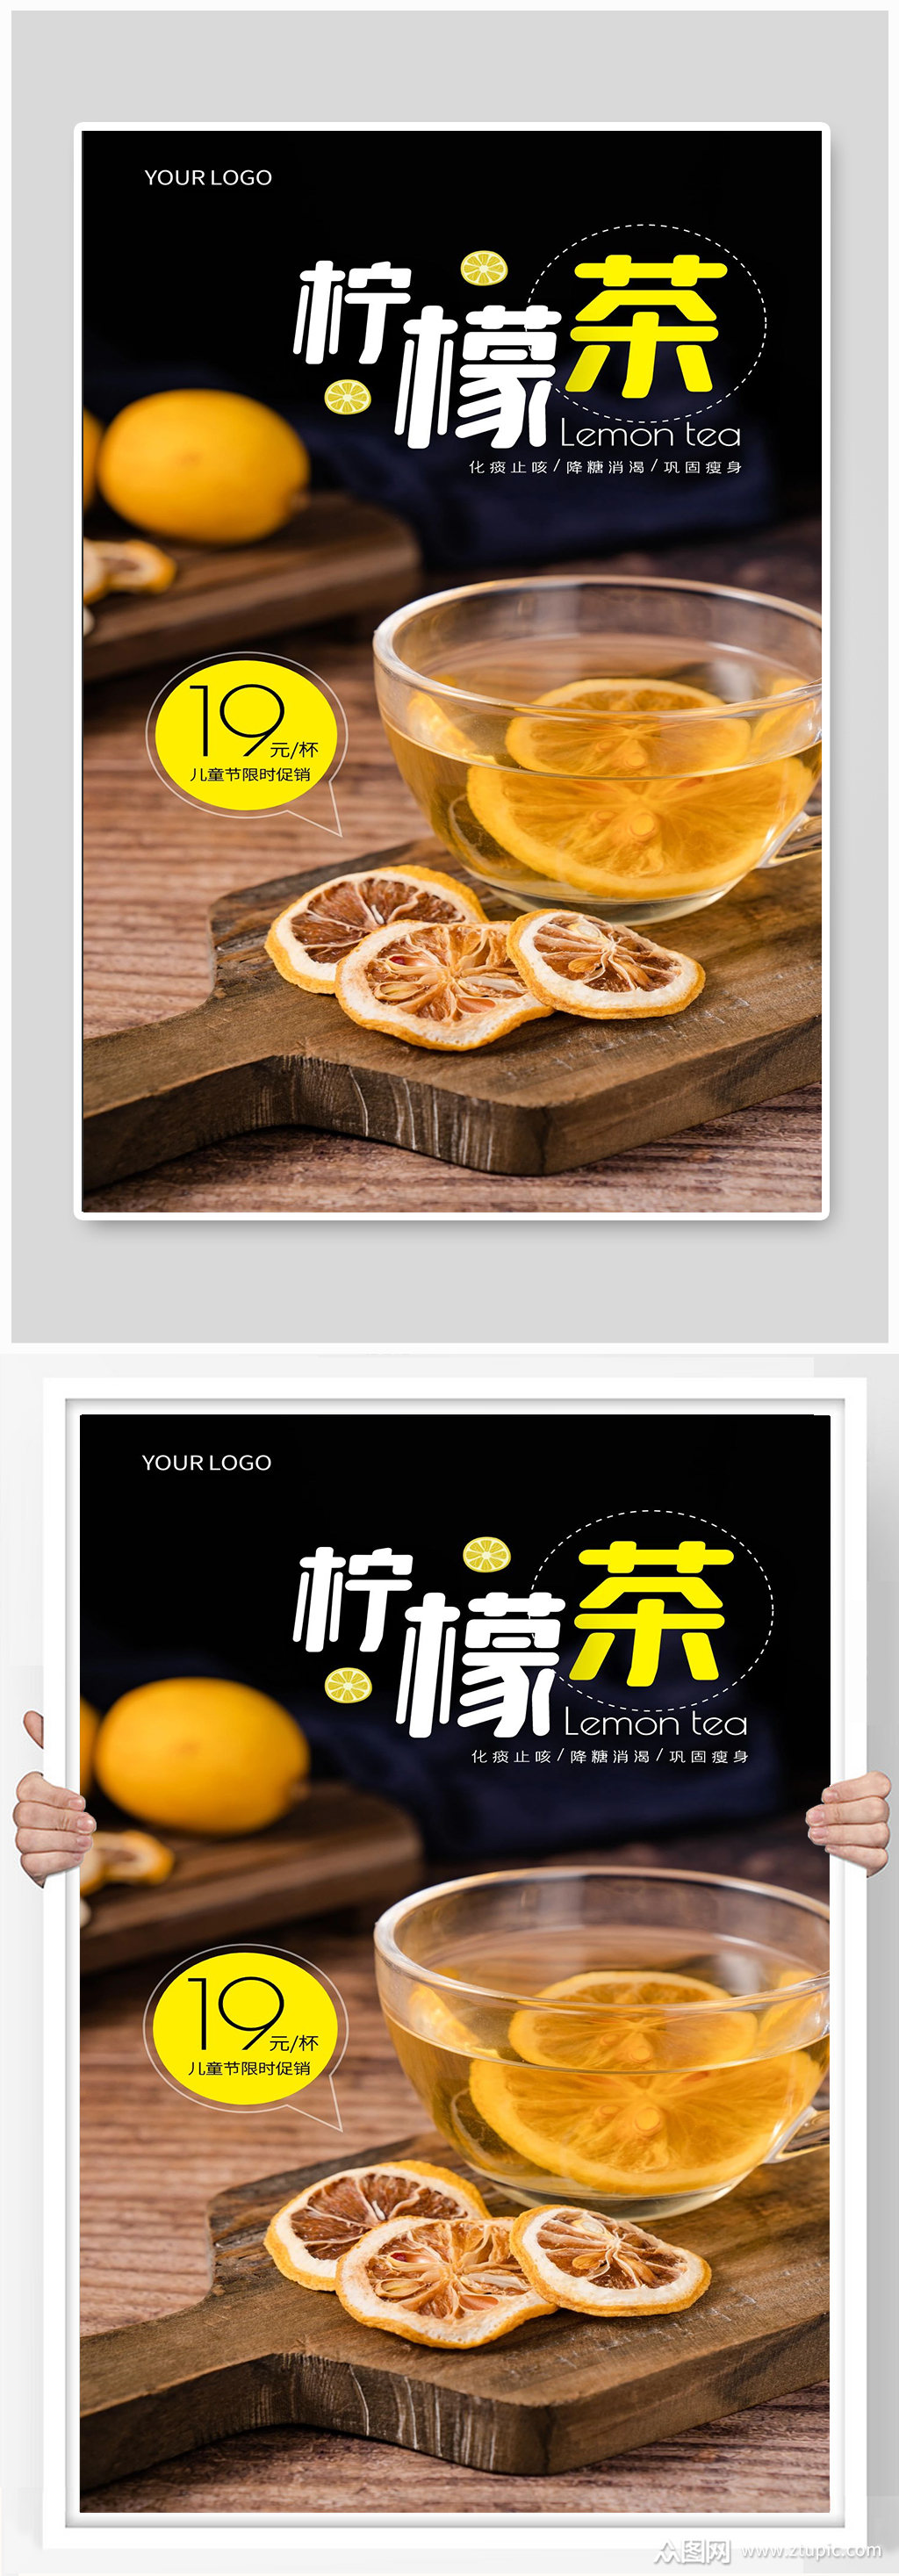 柠檬茶柠檬汁水果饮料宣传海报设计素材